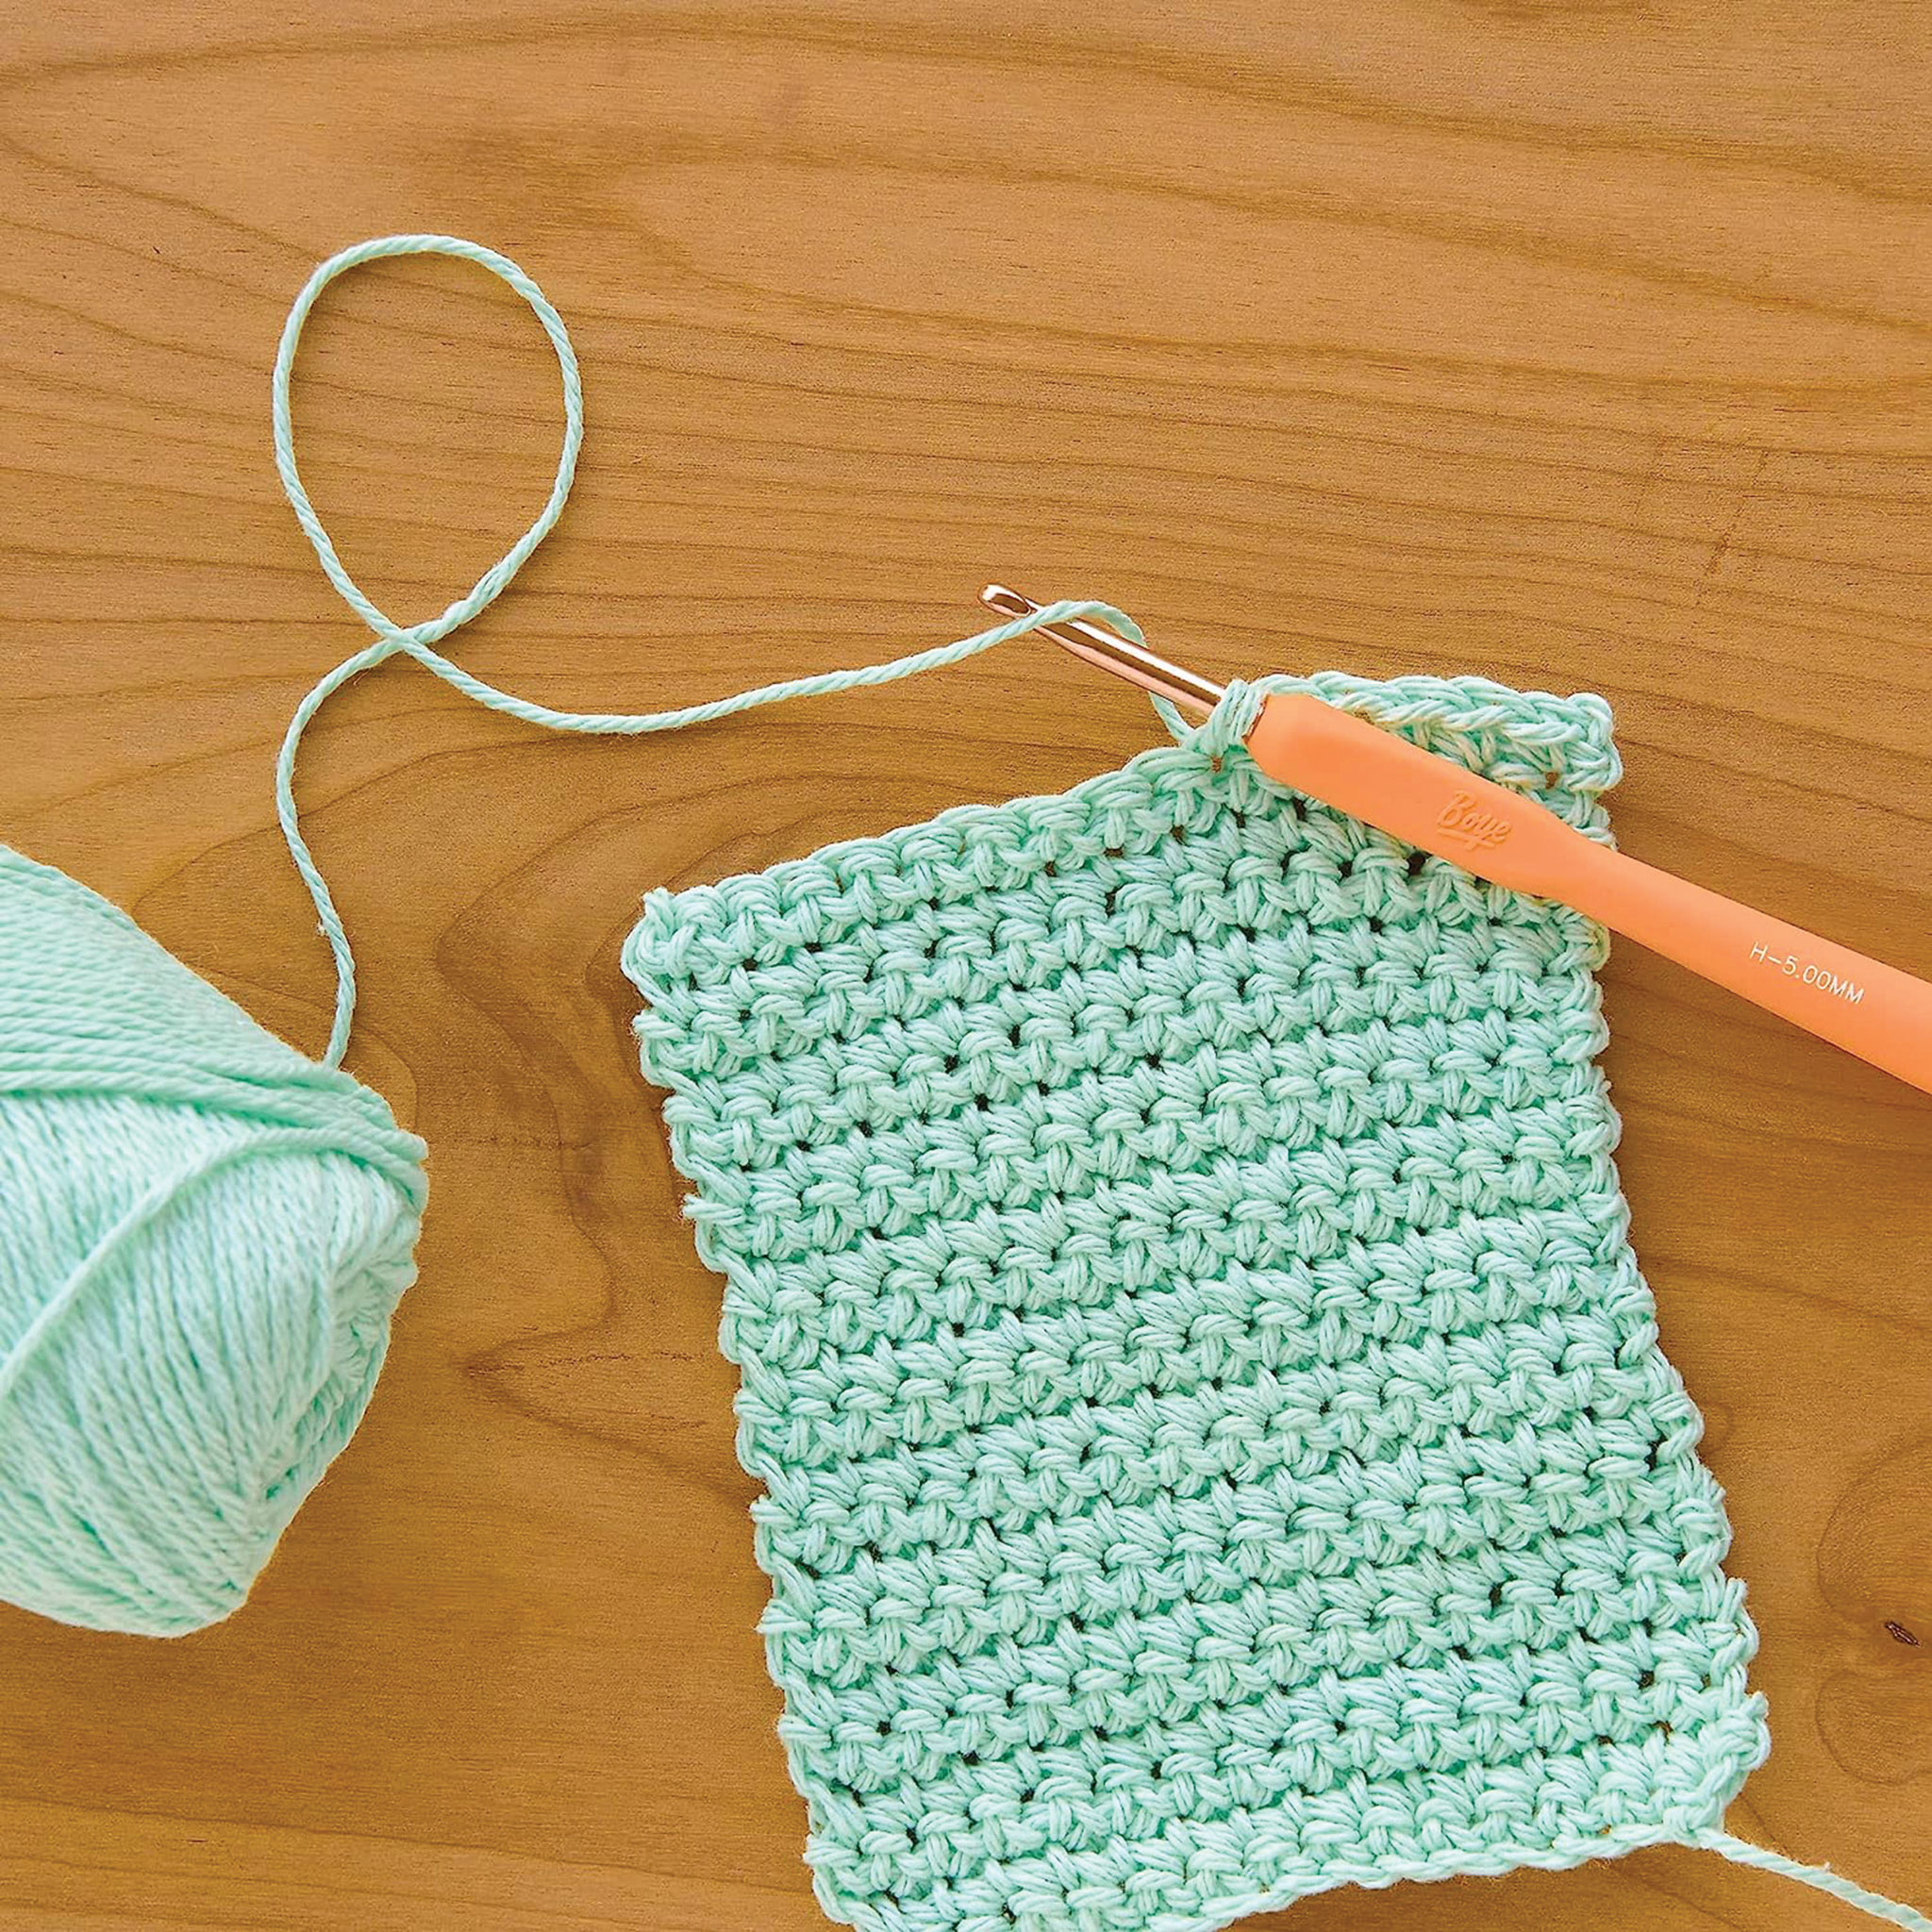 Boye Ergo Crochet Hook Sets